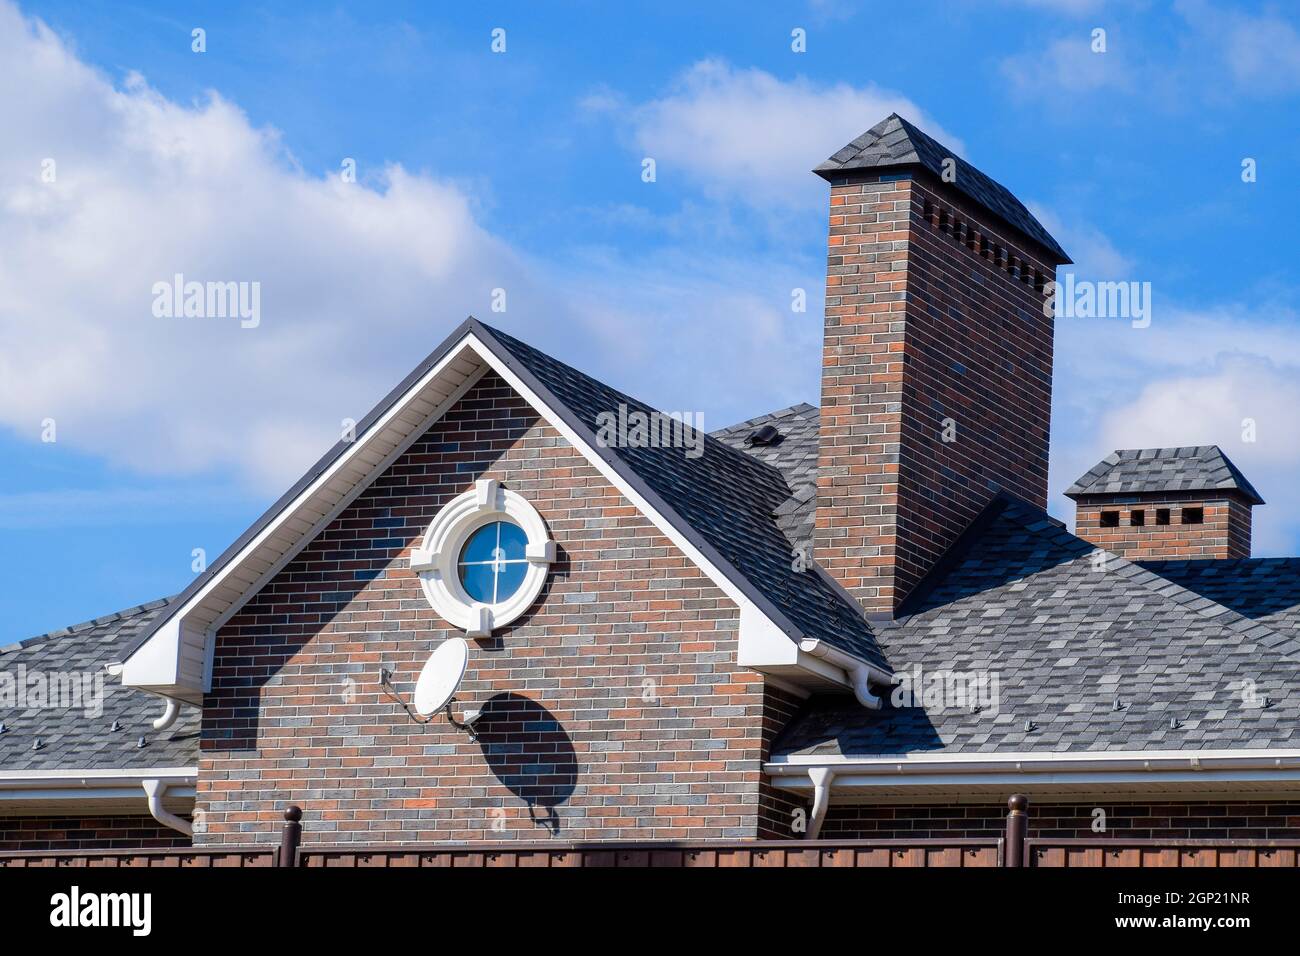 Asphalt Kies. Dekorative bitumen Schindeln auf dem Dach eines Brick House Stockfoto